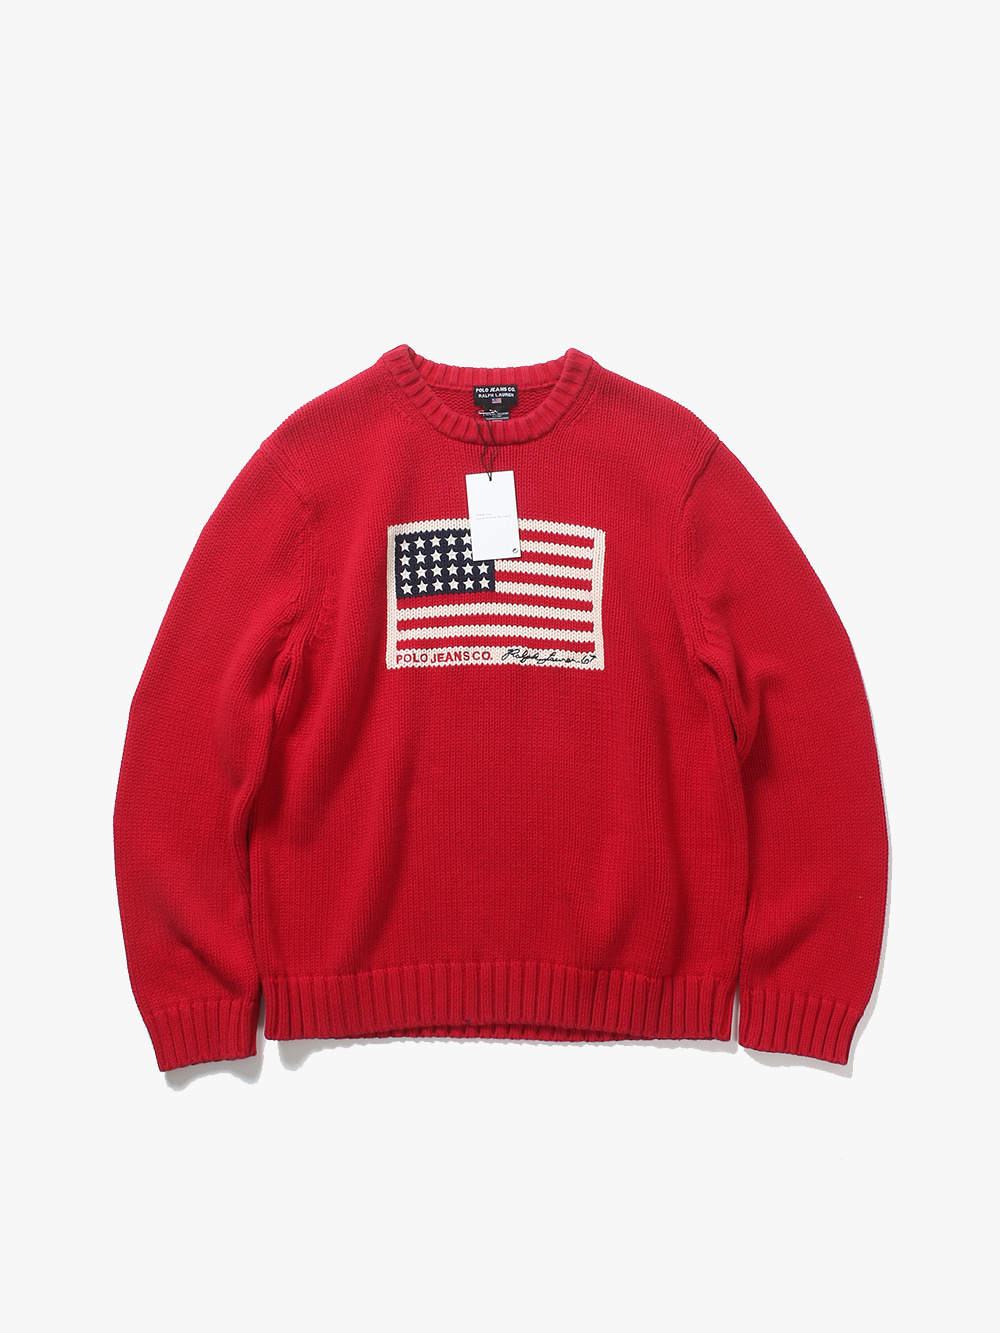 [ L ] Polo Ralph Lauren Sweater (6450)